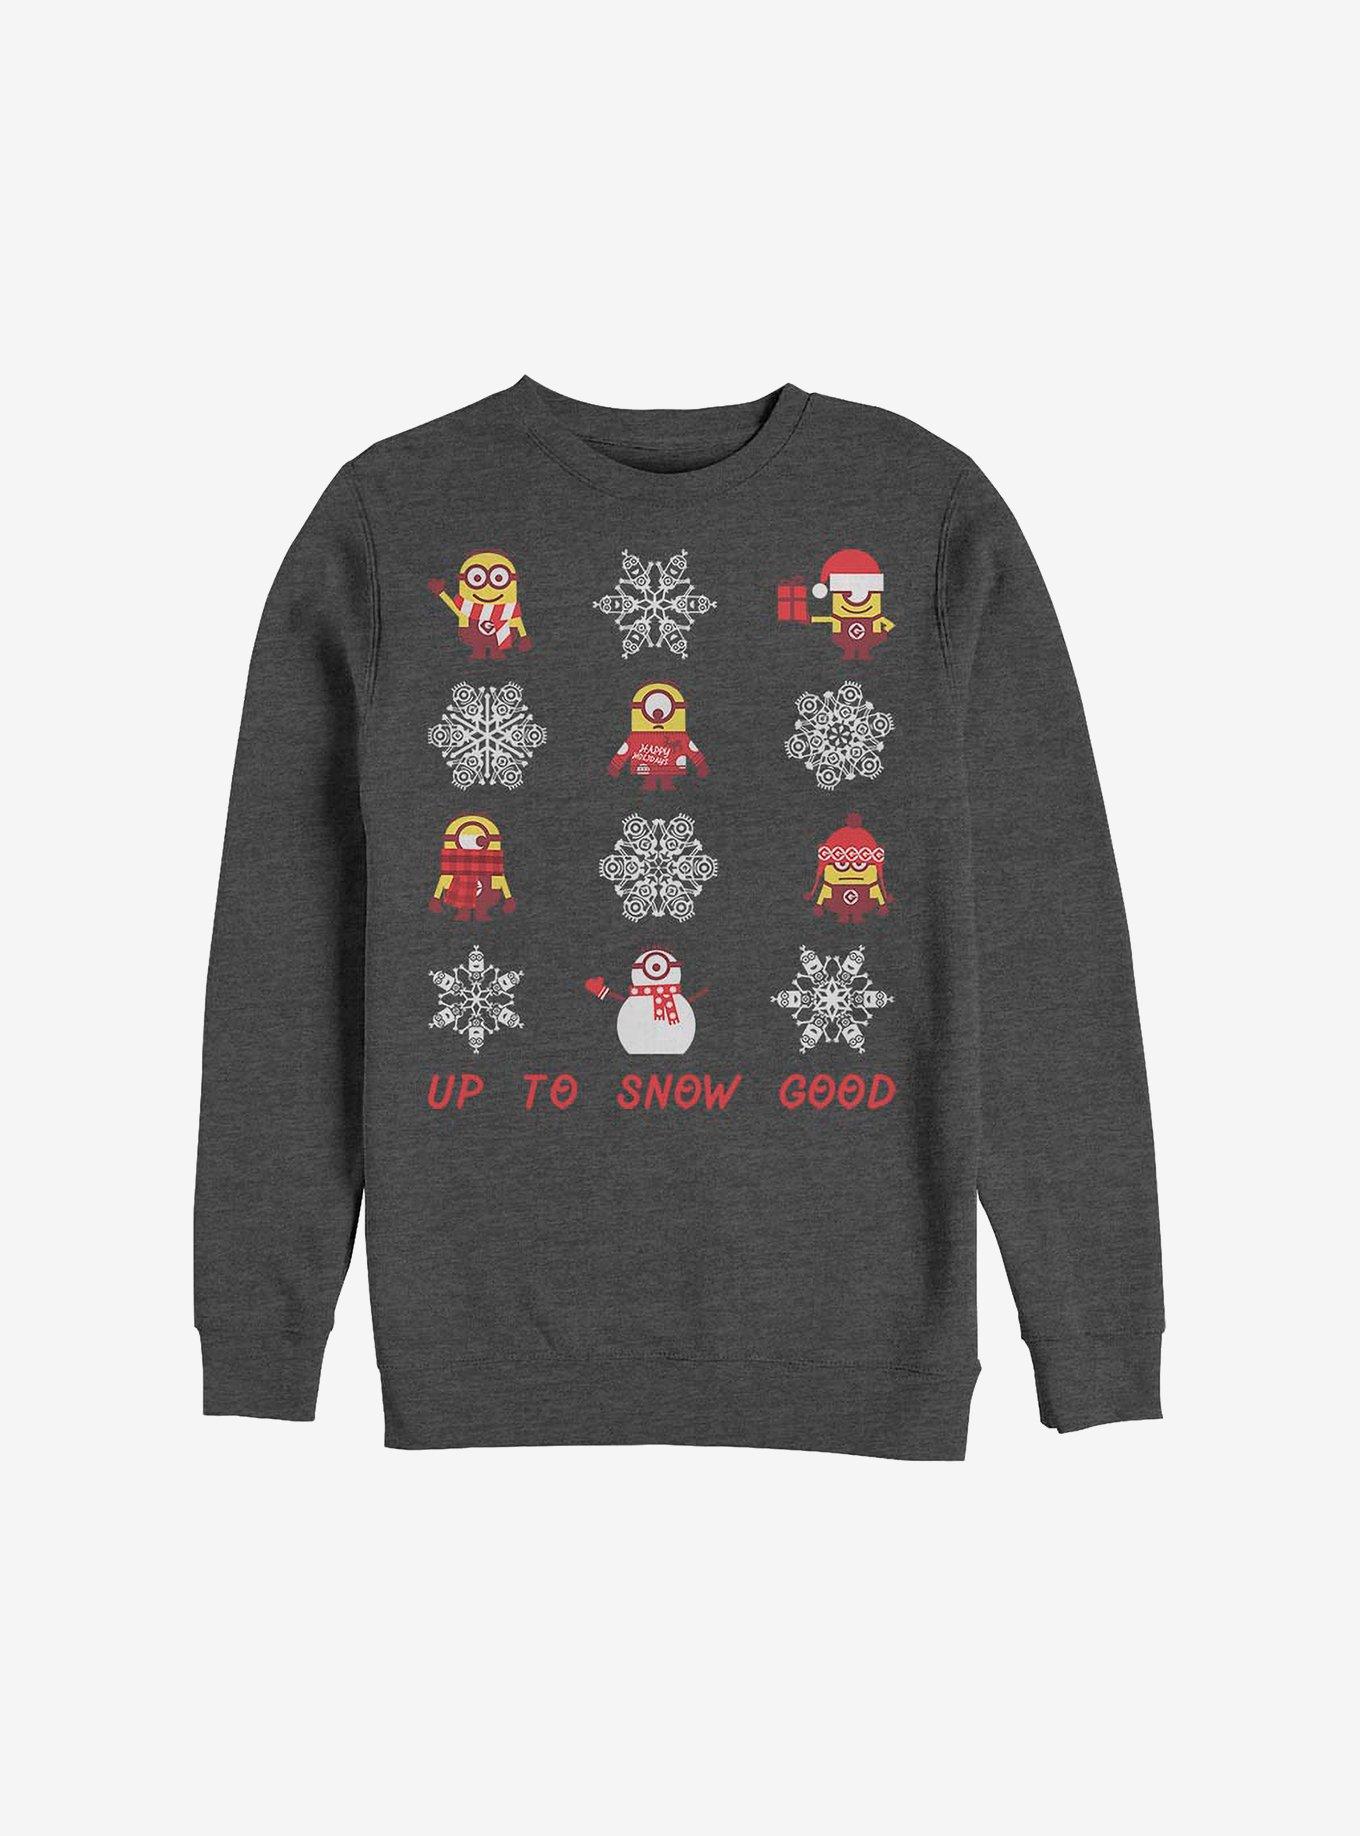 Minion Snowflake Holiday Sweatshirt, CHAR HTR, hi-res